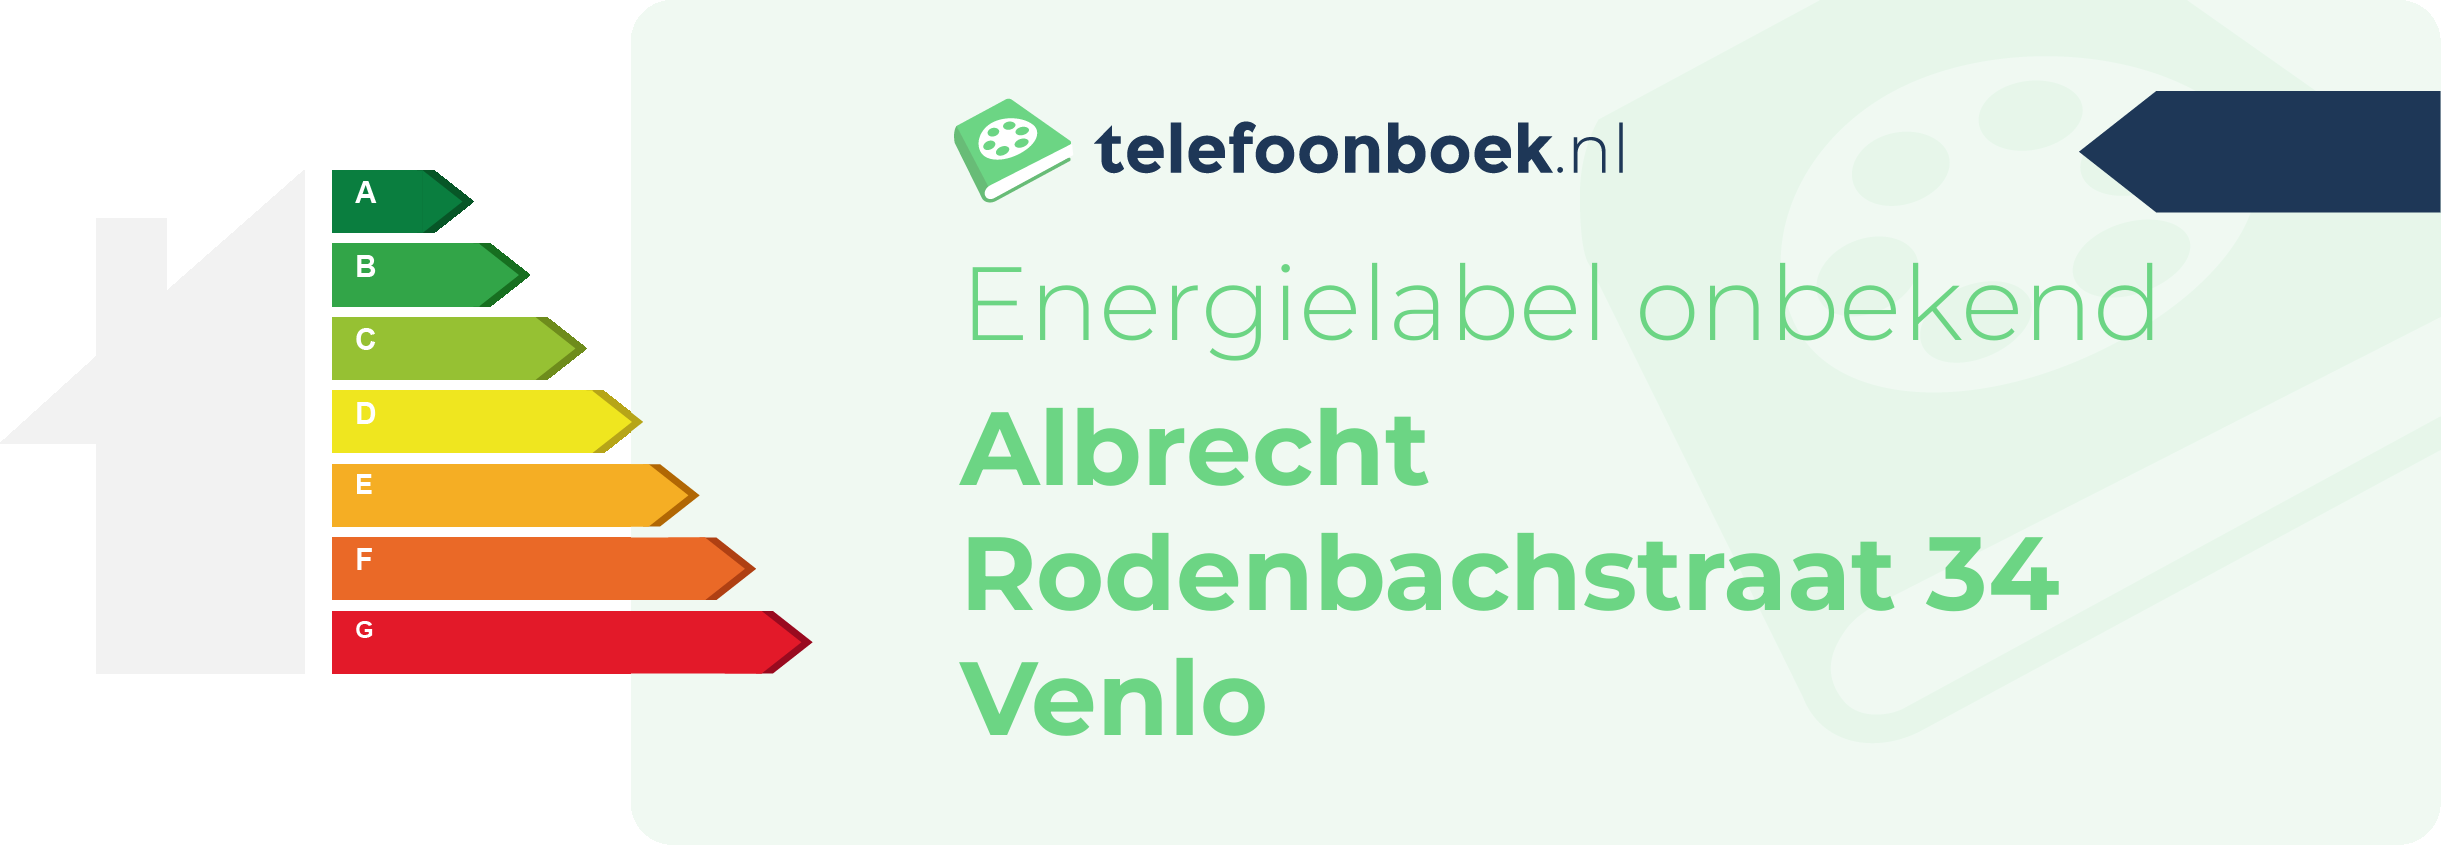 Energielabel Albrecht Rodenbachstraat 34 Venlo